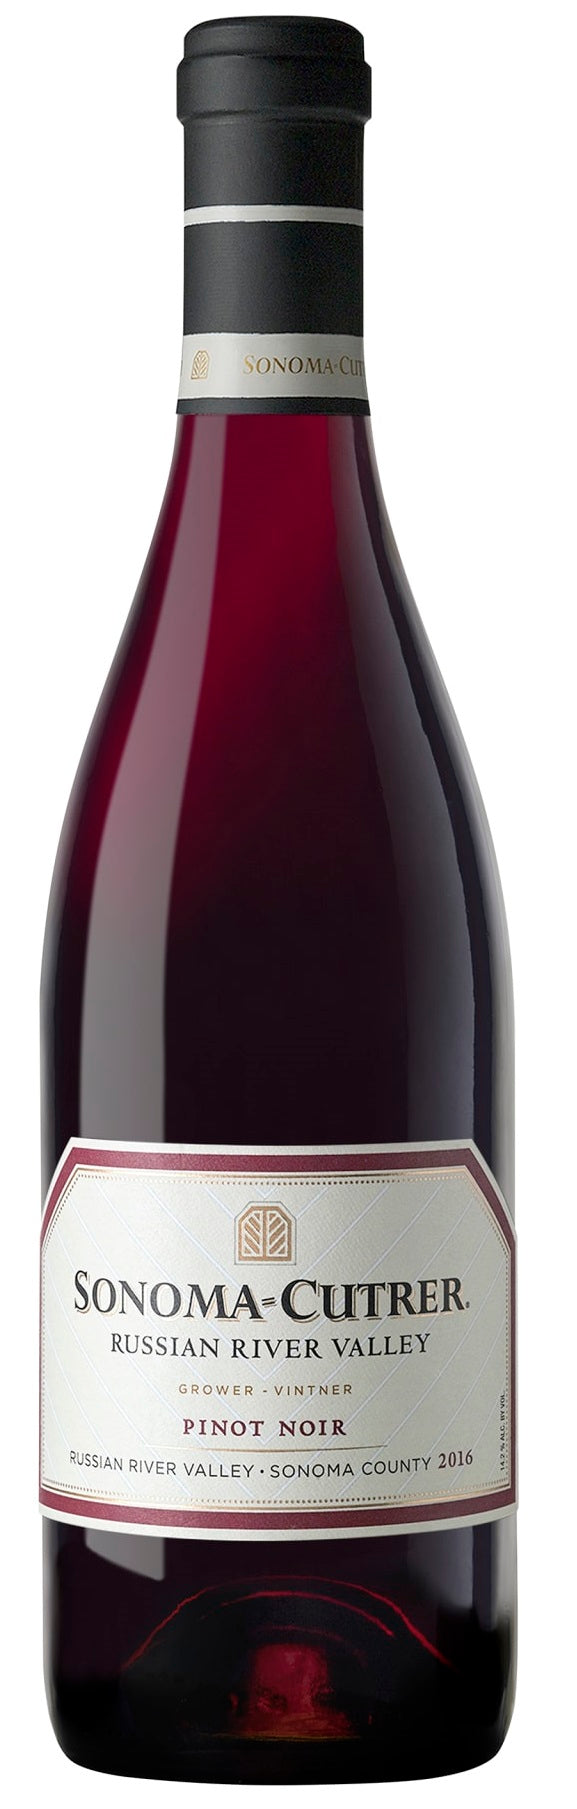 Sonoma-Cutrer Pinot Noir 2018